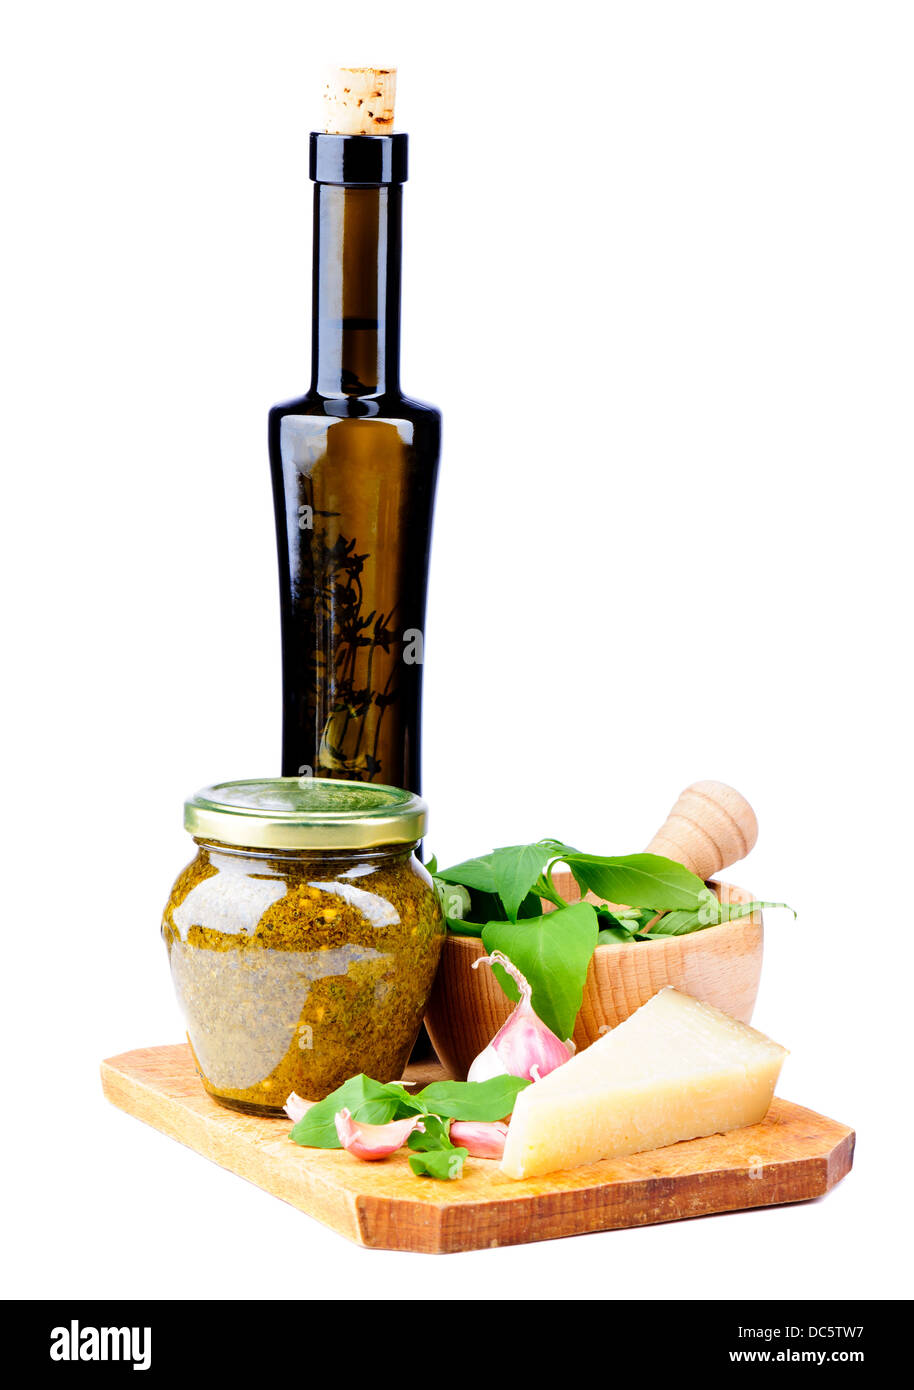 Pesto di basilico e gli ingredienti isolati su sfondo bianco Foto Stock